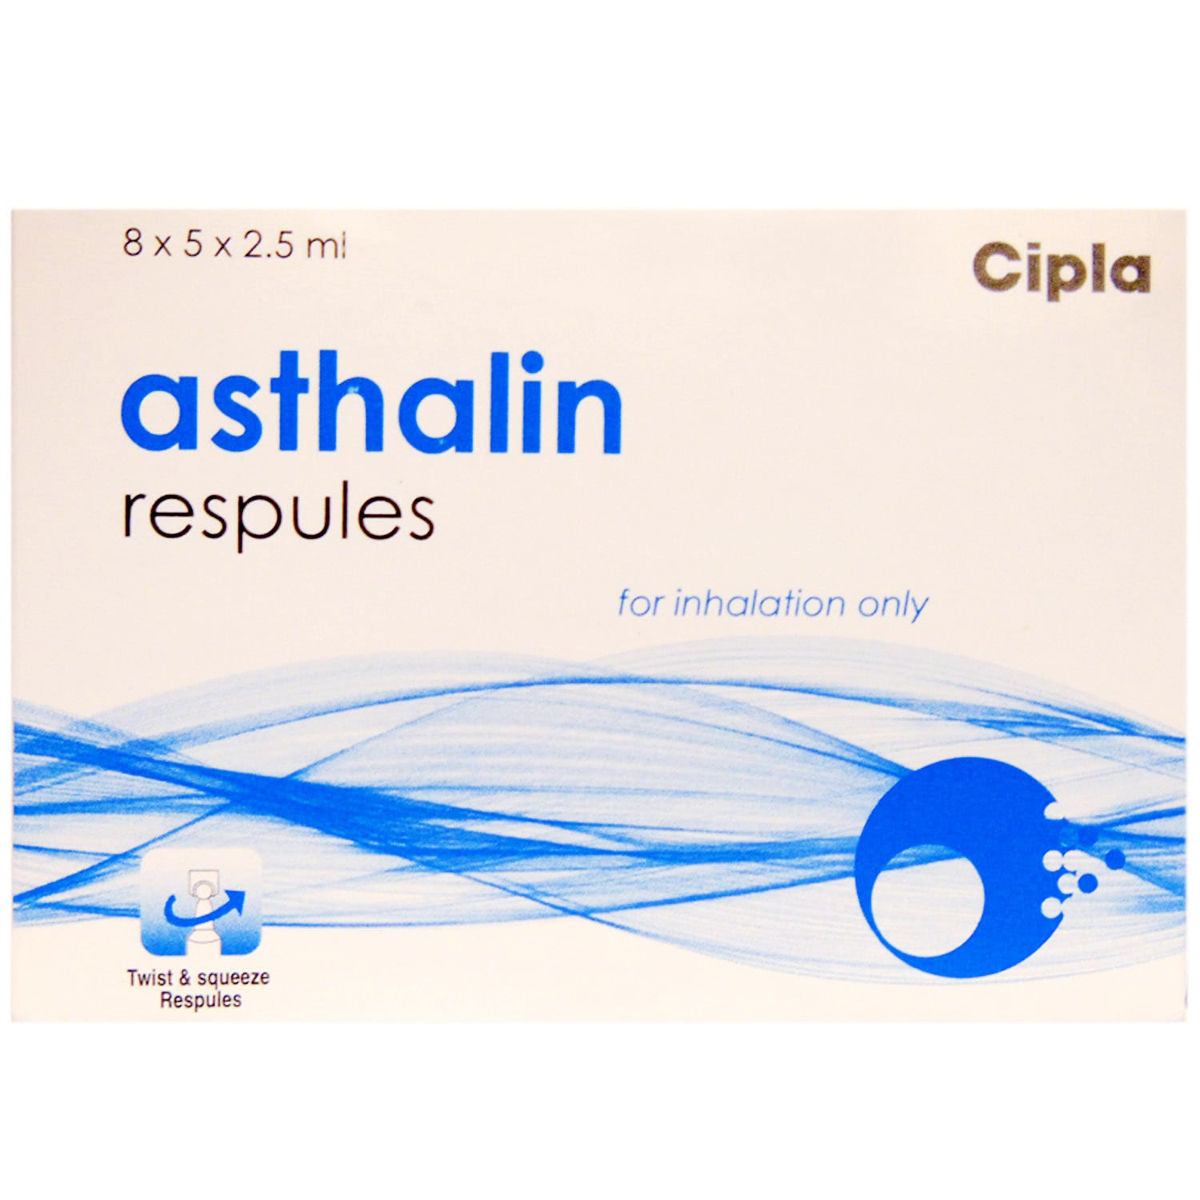 Asthalin Respules 5 x 2.5 ml, Pack of 5 RespulesS